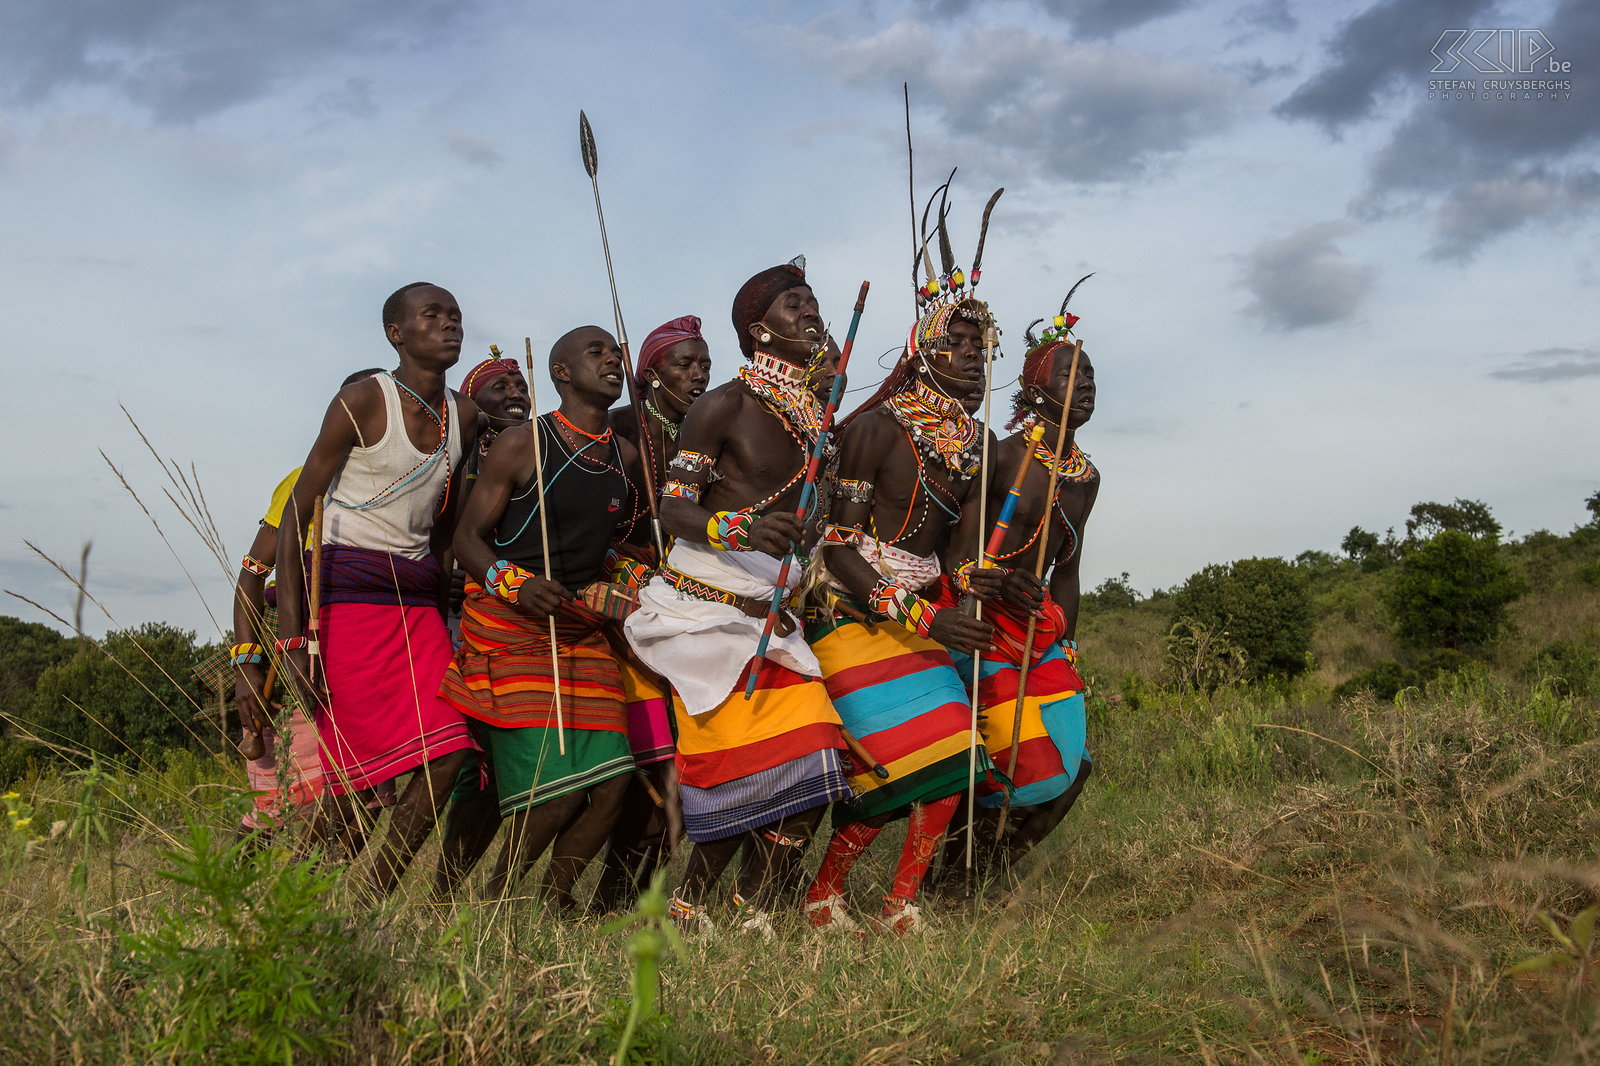 Suguta Marma - Dansende Samburu morans De krijgers die we uitgenodigd hadden, demonstreerden hun traditionele dansen met indrukwekkende hoge sprongen. Ze zingen, lopen rond en springen omhoog vanuit een staande positie. Een prachtig schouwspel. Stefan Cruysberghs